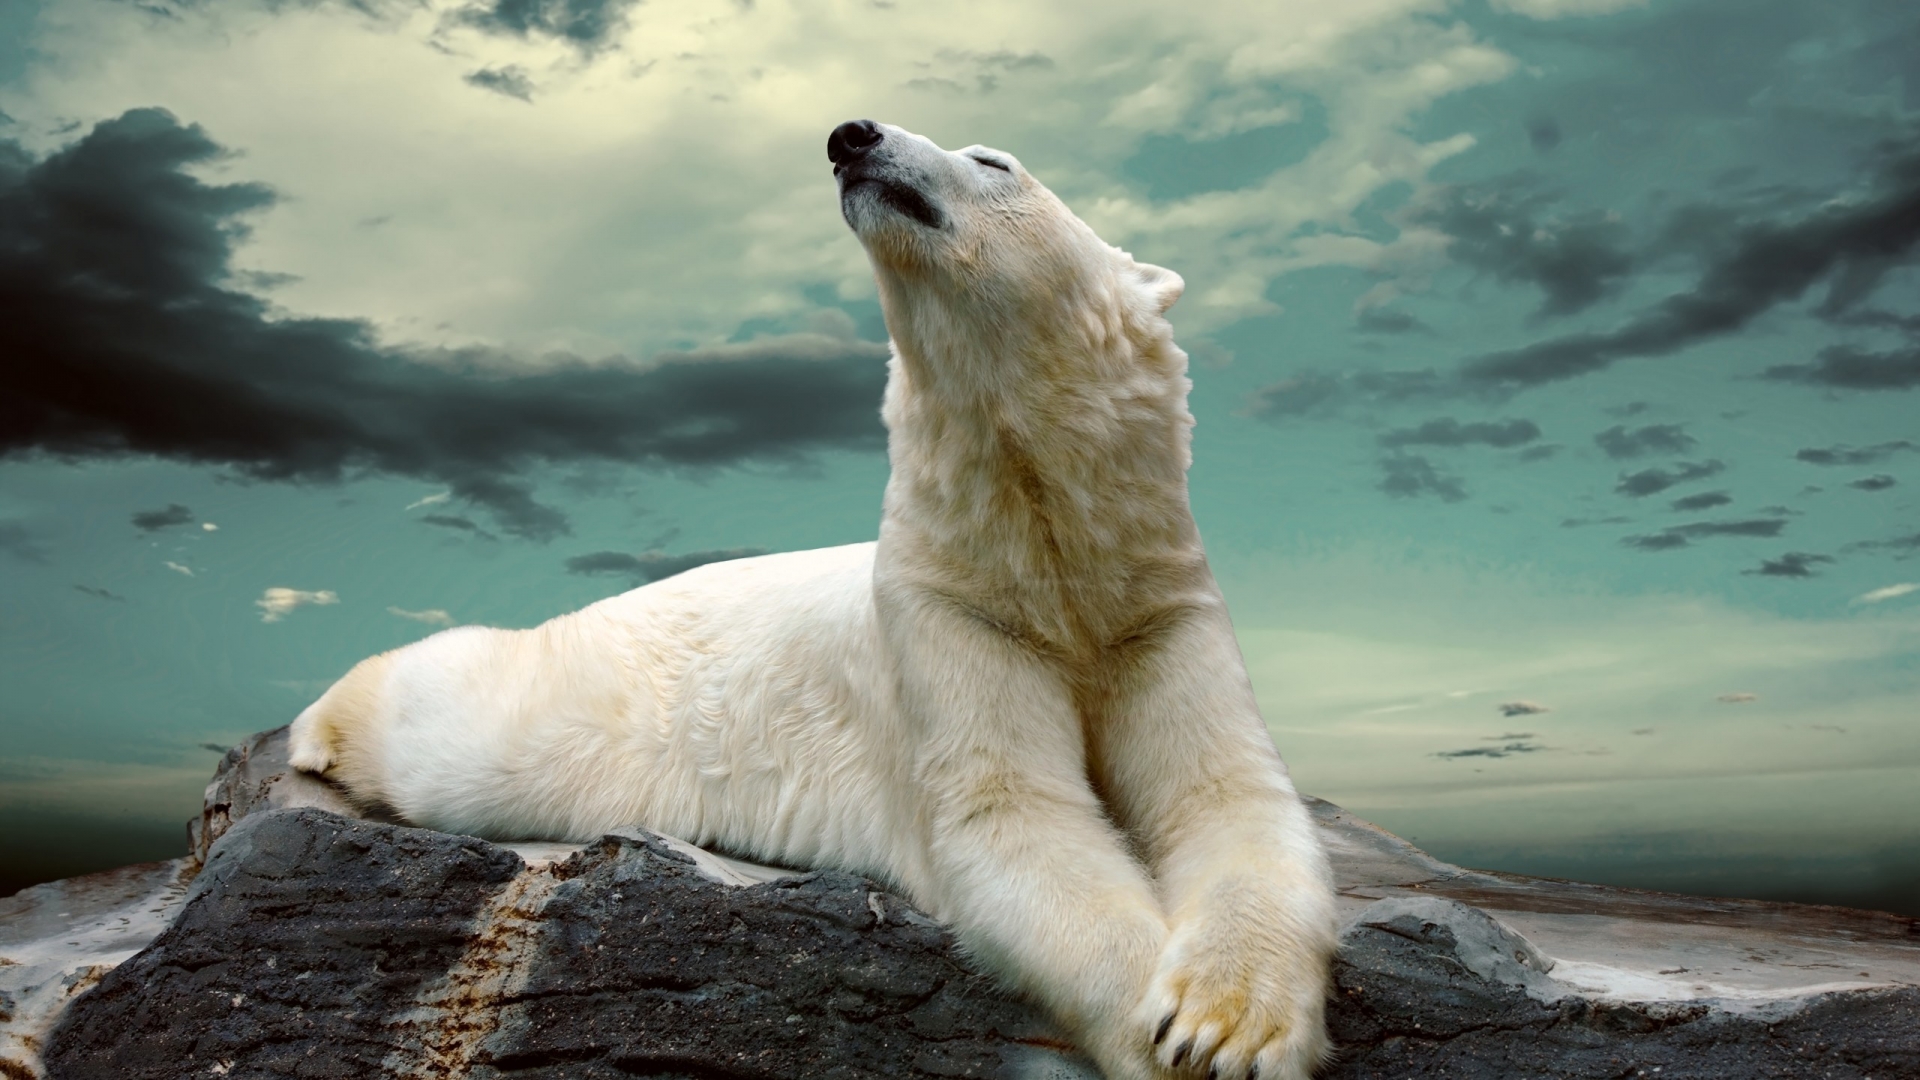 Polar Bear Dreaming for 1920 x 1080 HDTV 1080p resolution